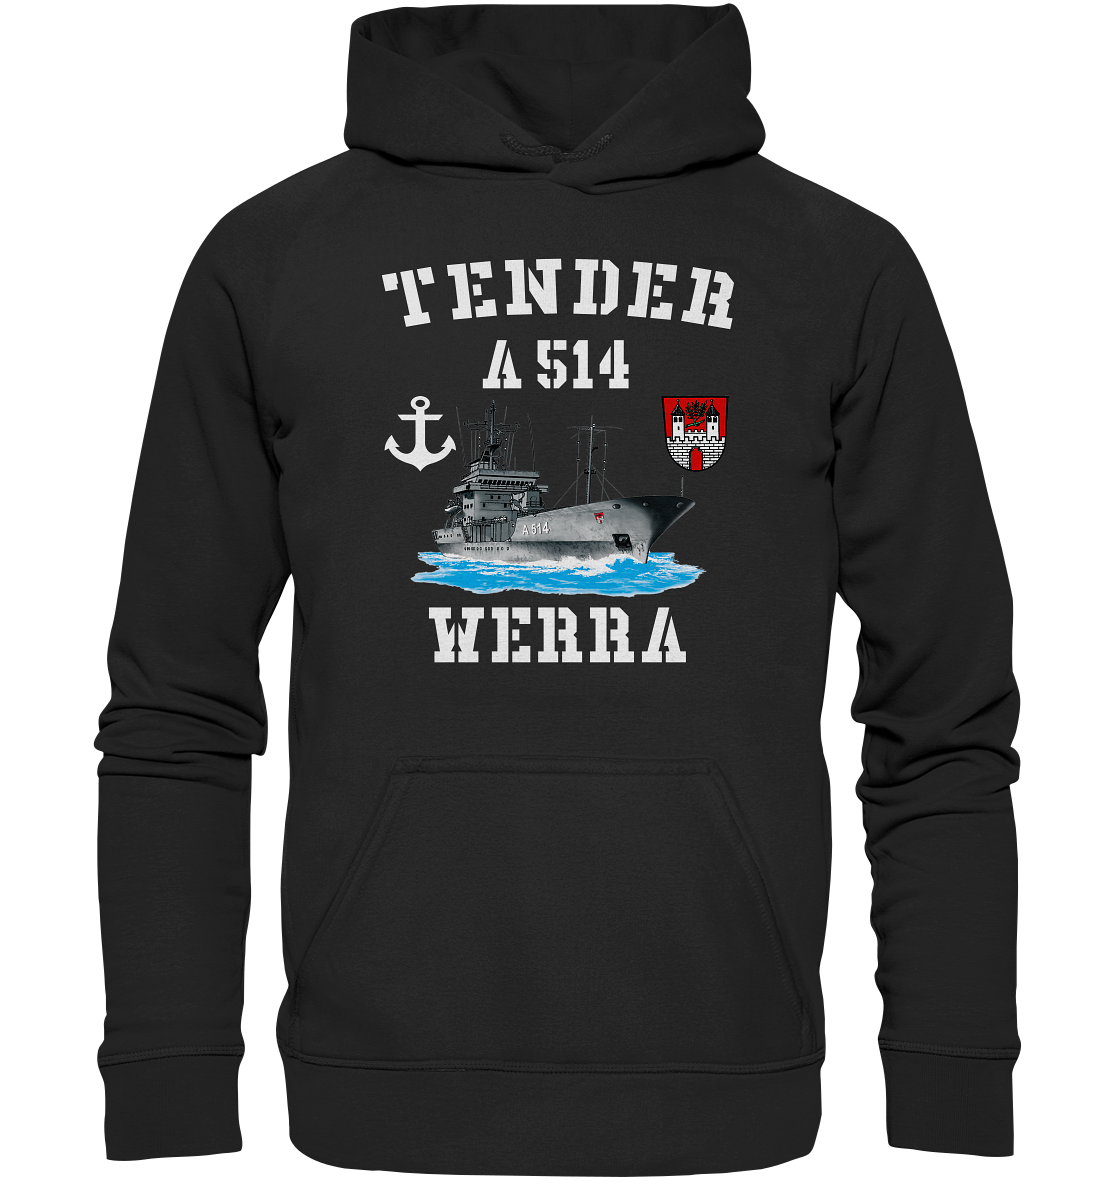 Tender A514 WERRA Anker - Basic Unisex Hoodie